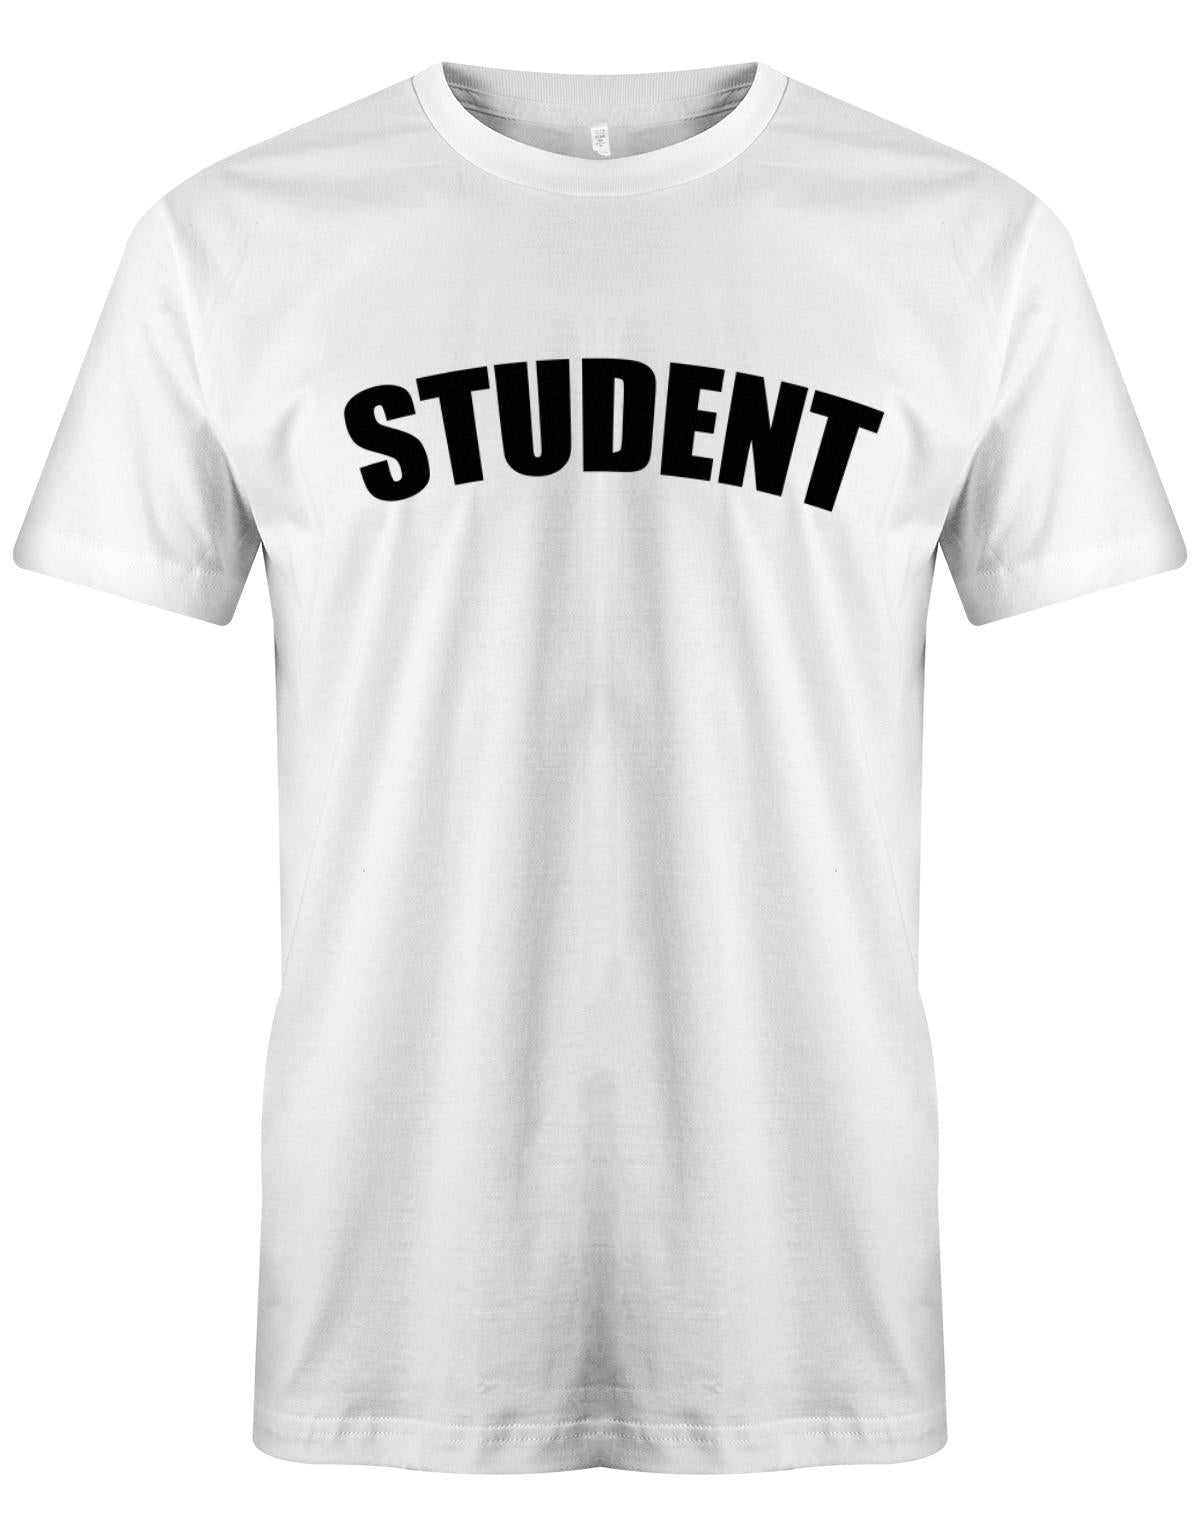 Student-Schrift-Herren-Shirt-Weiss